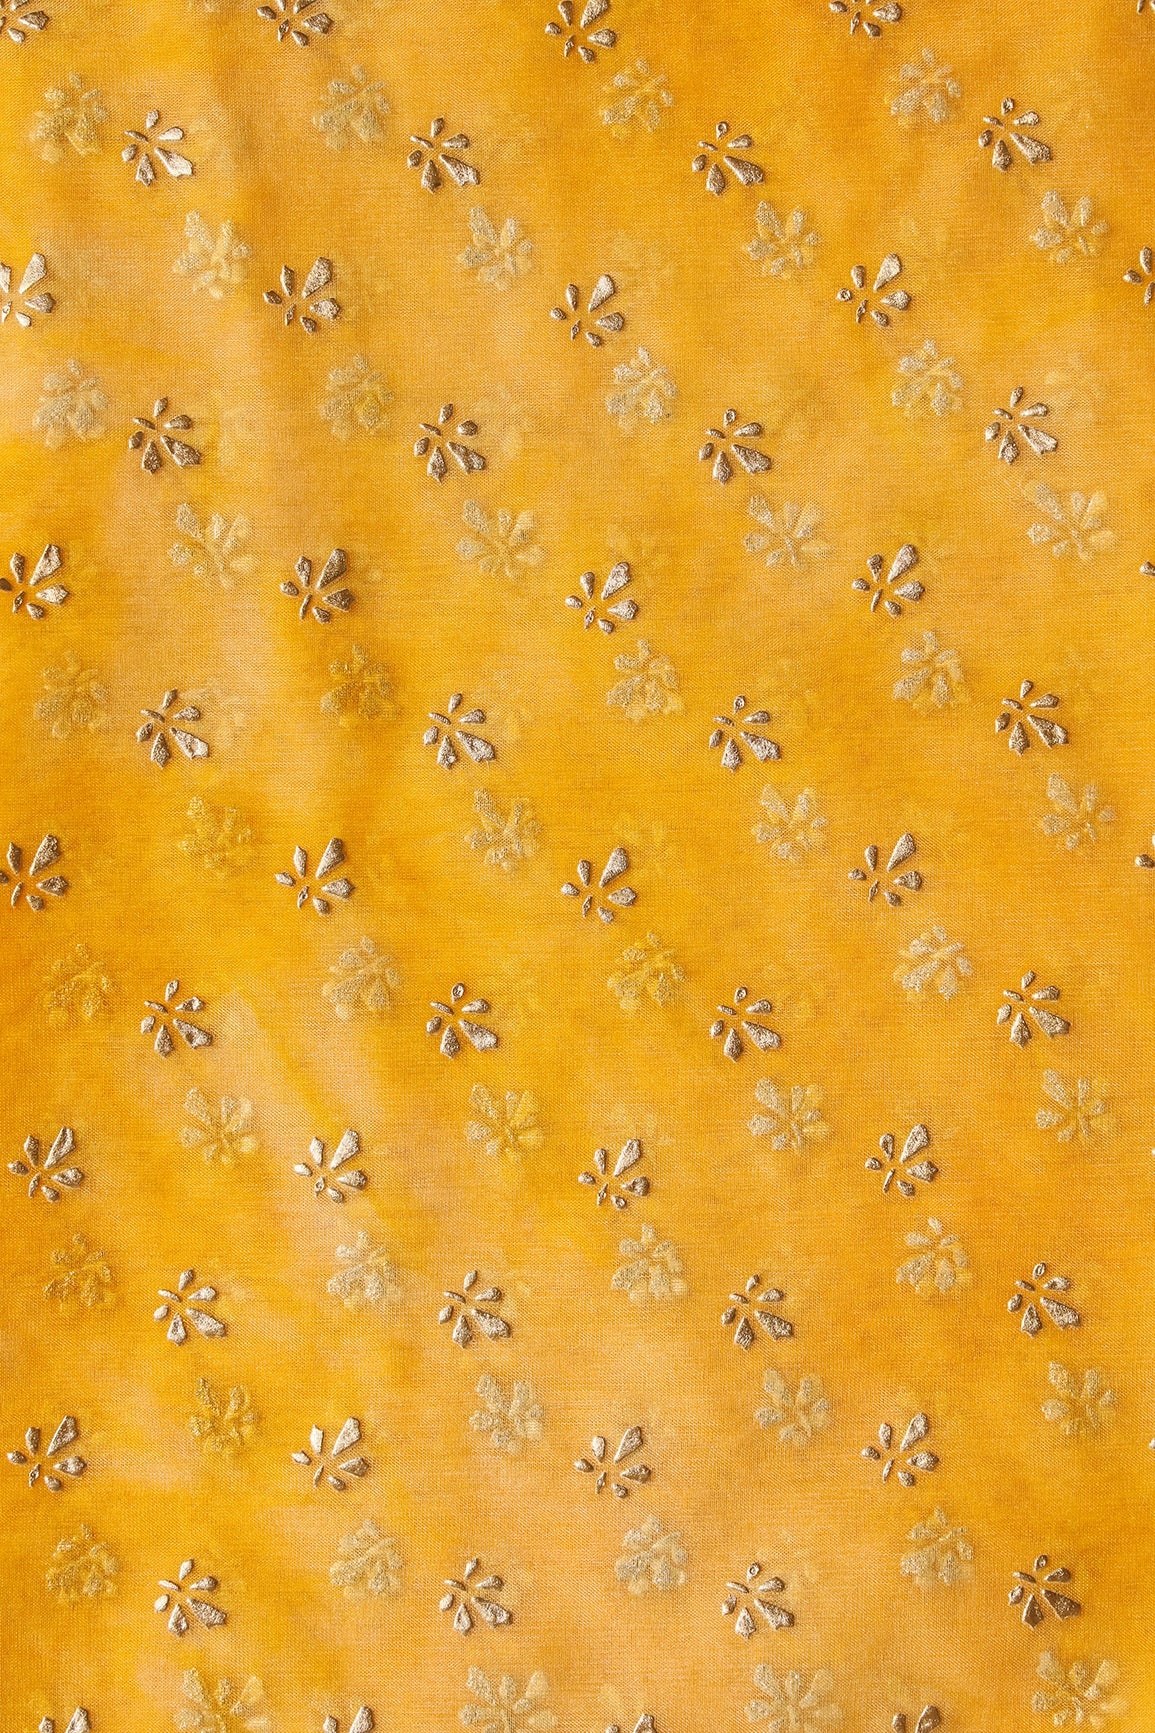 Yellow Tie & Dye Shibori Small Floral Motif Foil Print On Organza Fabric